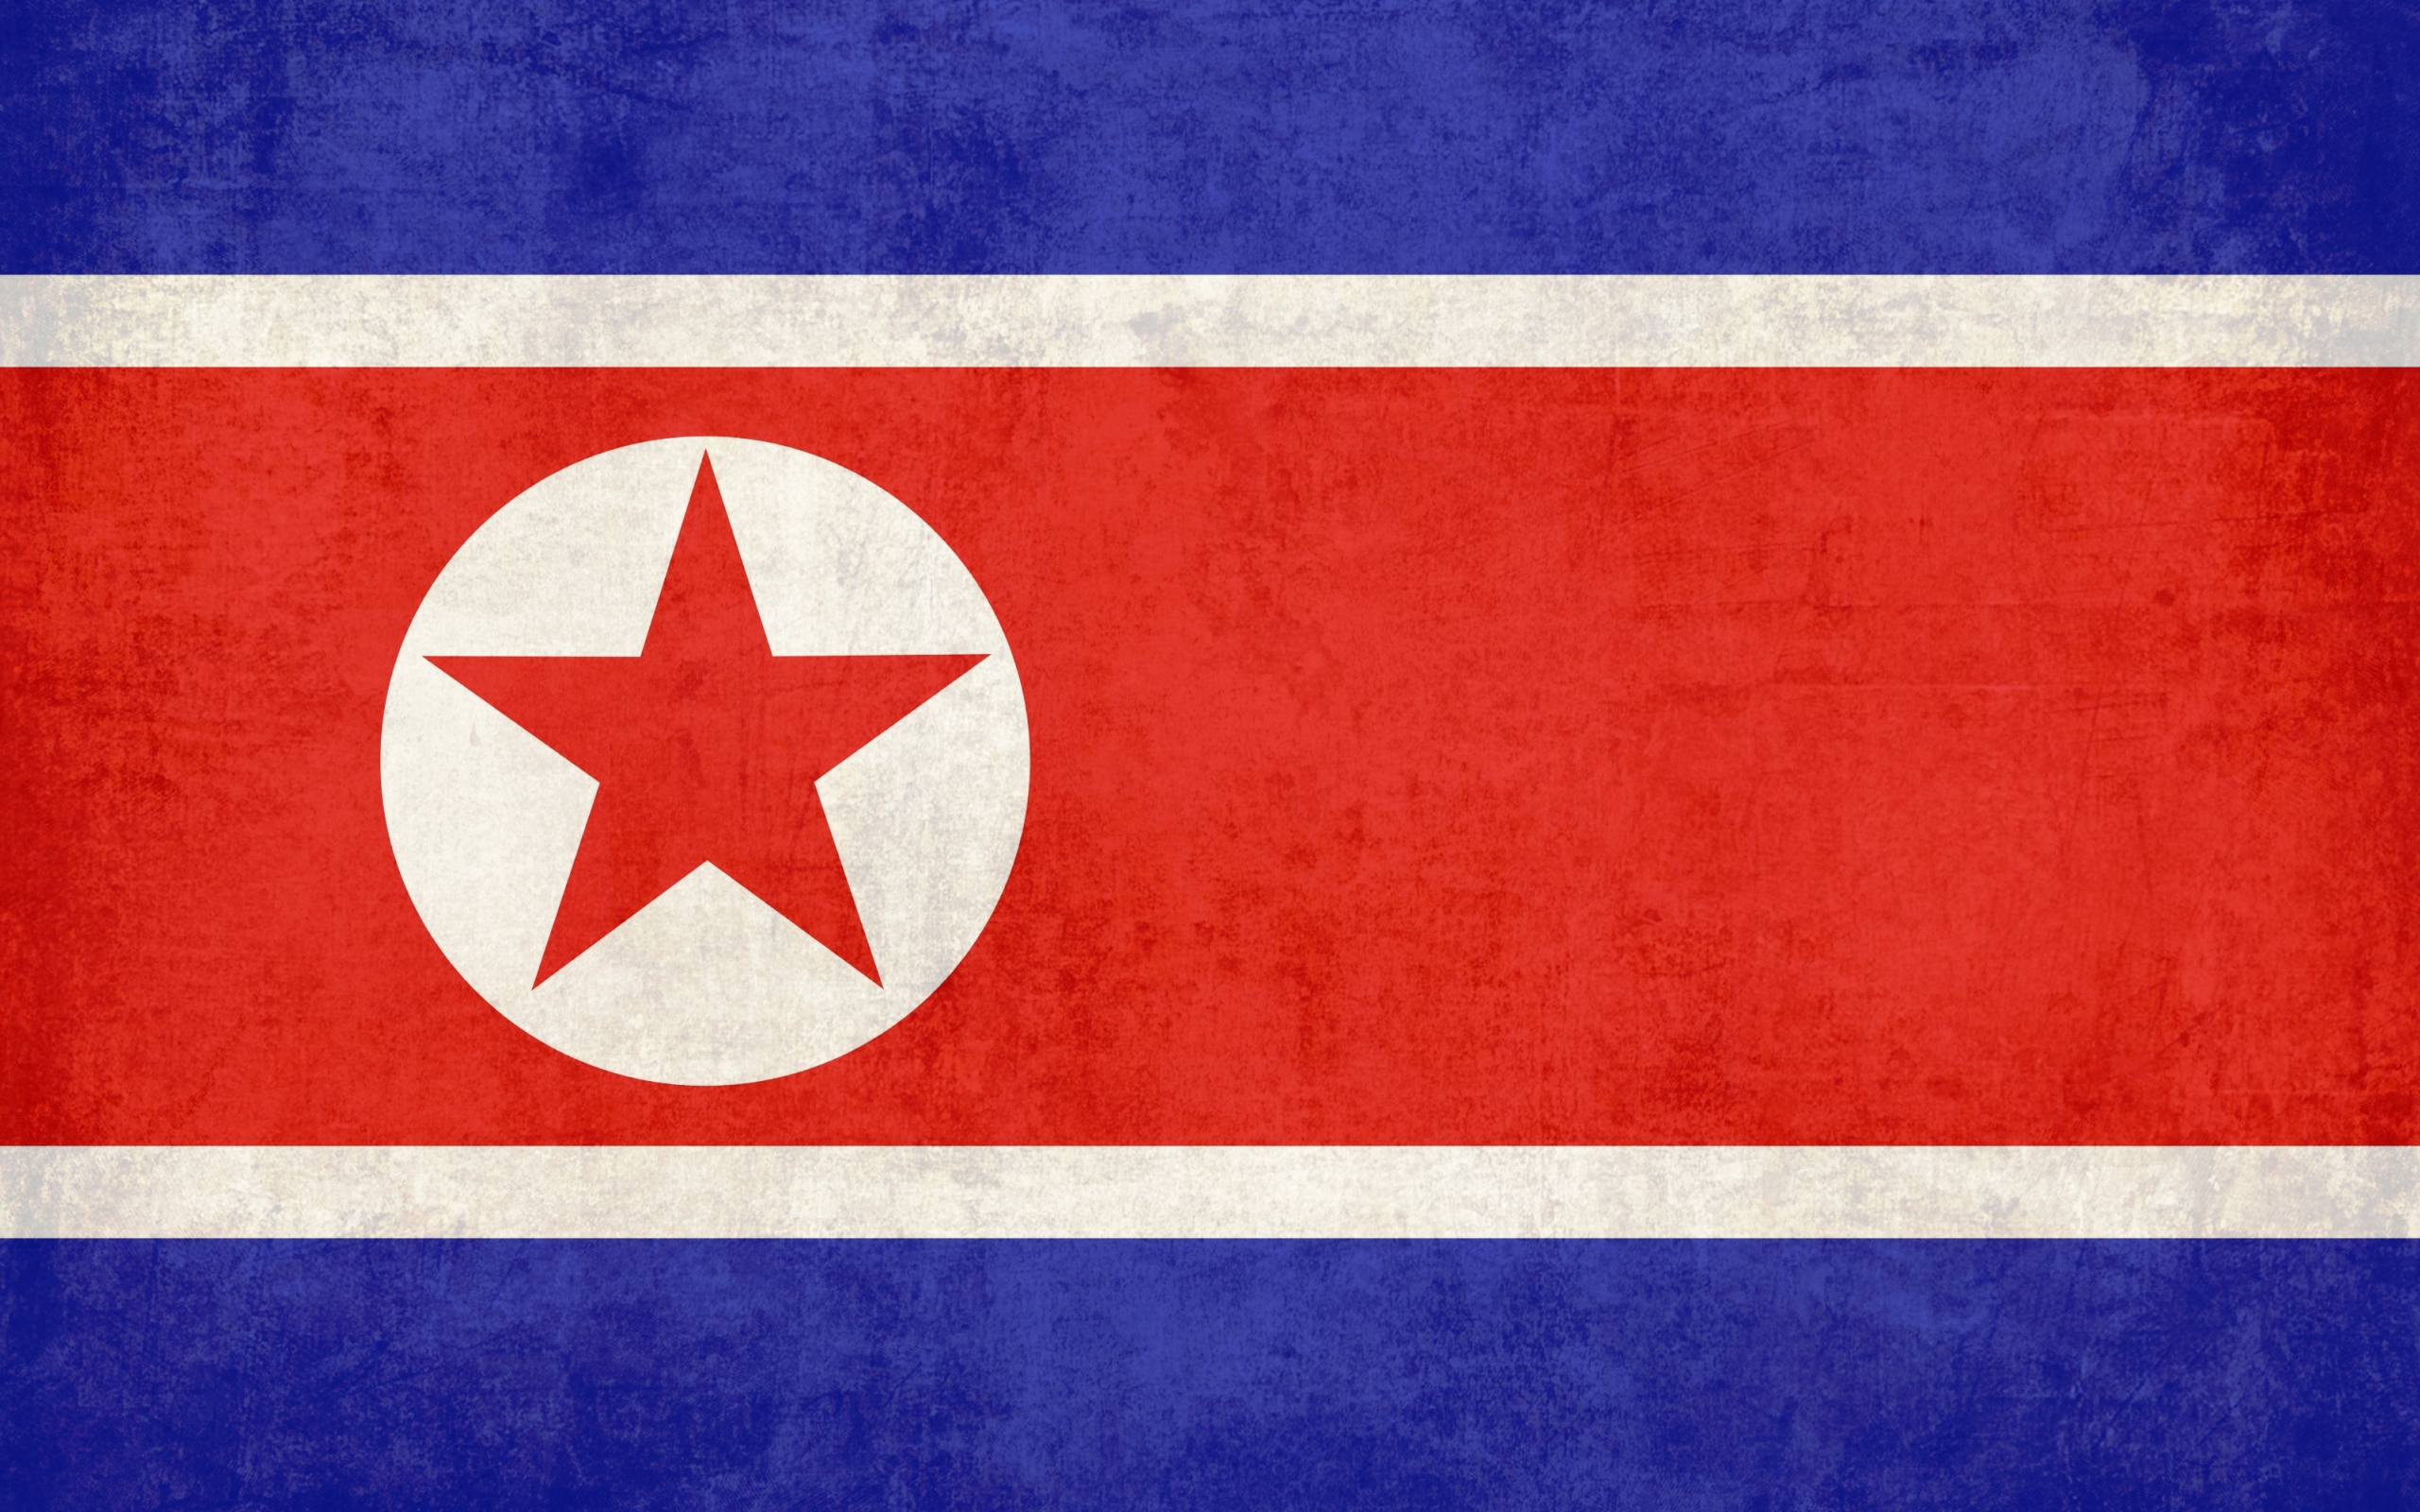 У Північній Кореї заборонили саркастичні висловлювання щодо уряду